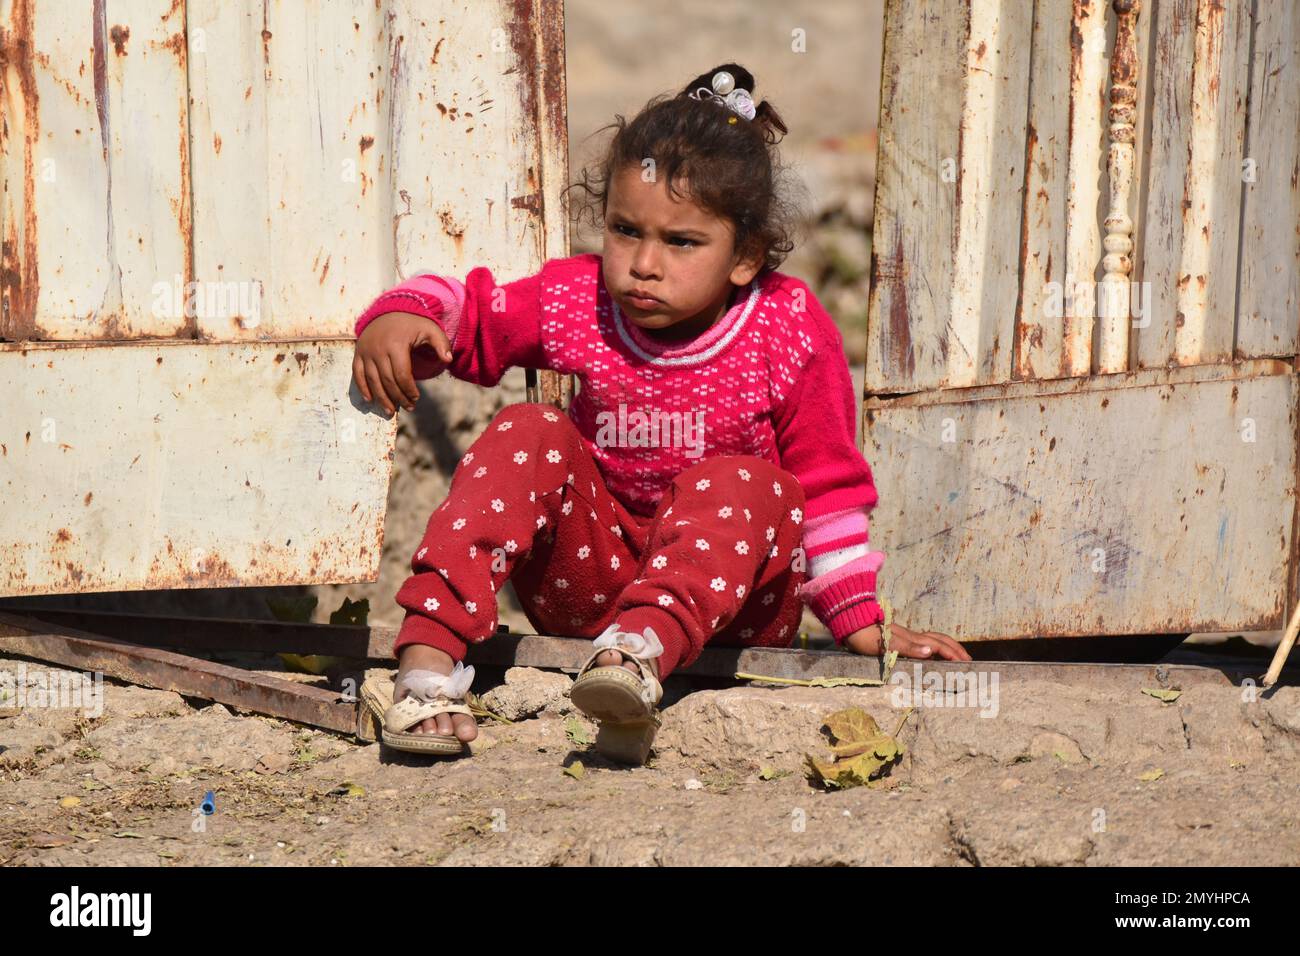 Une petite fille avec une expression sérieuse montre que les étrangers marchent au-delà de sa maison. Banque D'Images